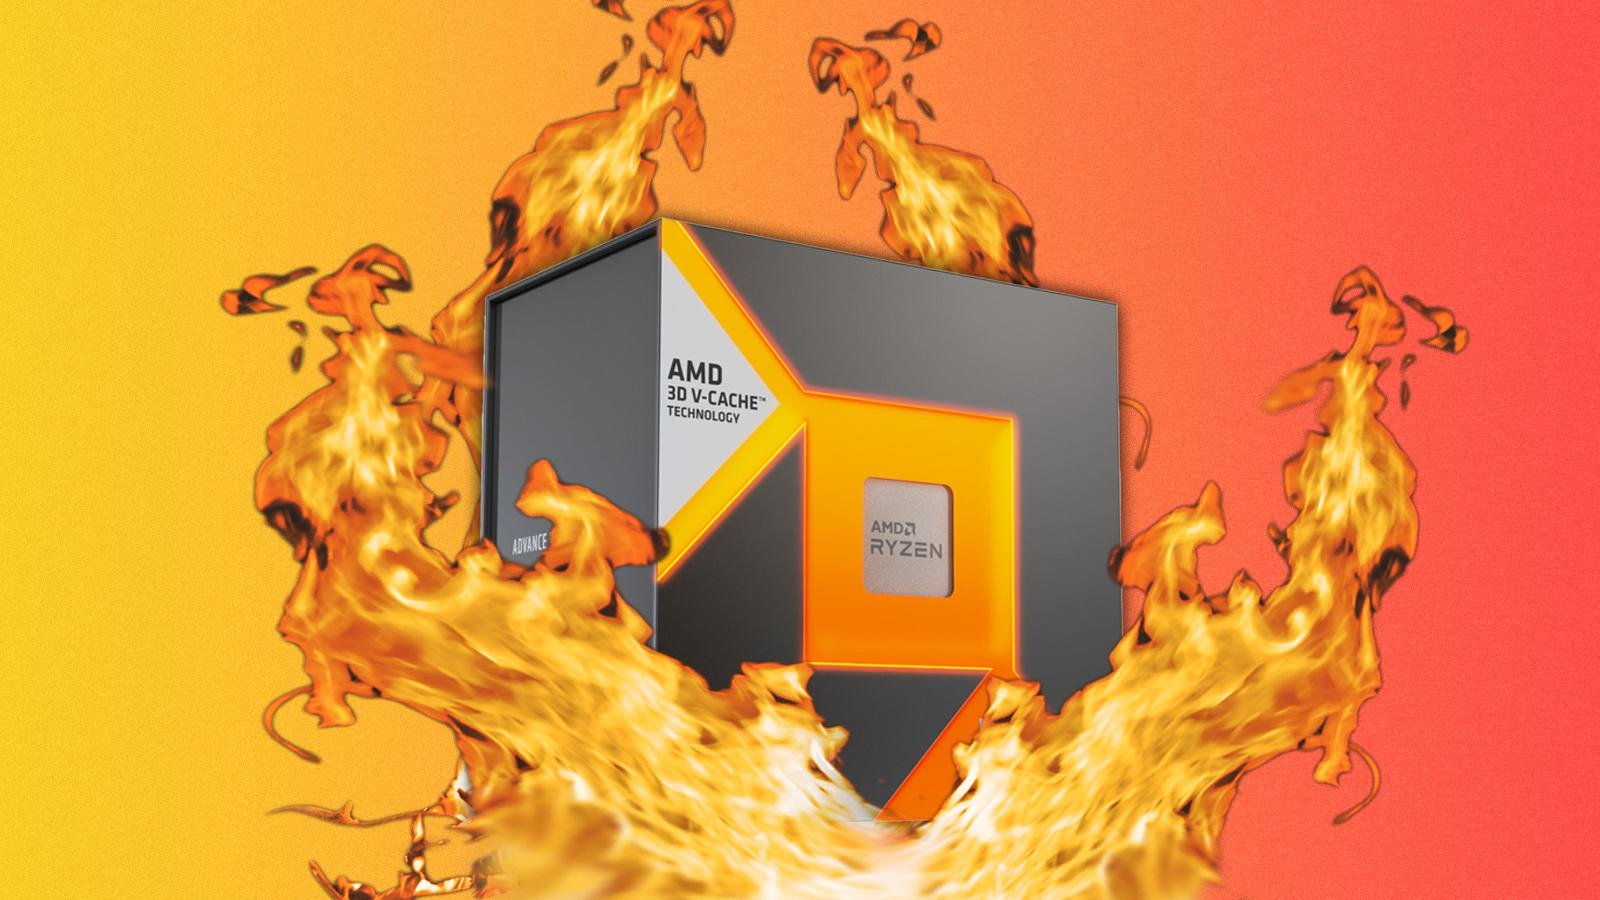 AMD Ryzen 7800X3D on fire